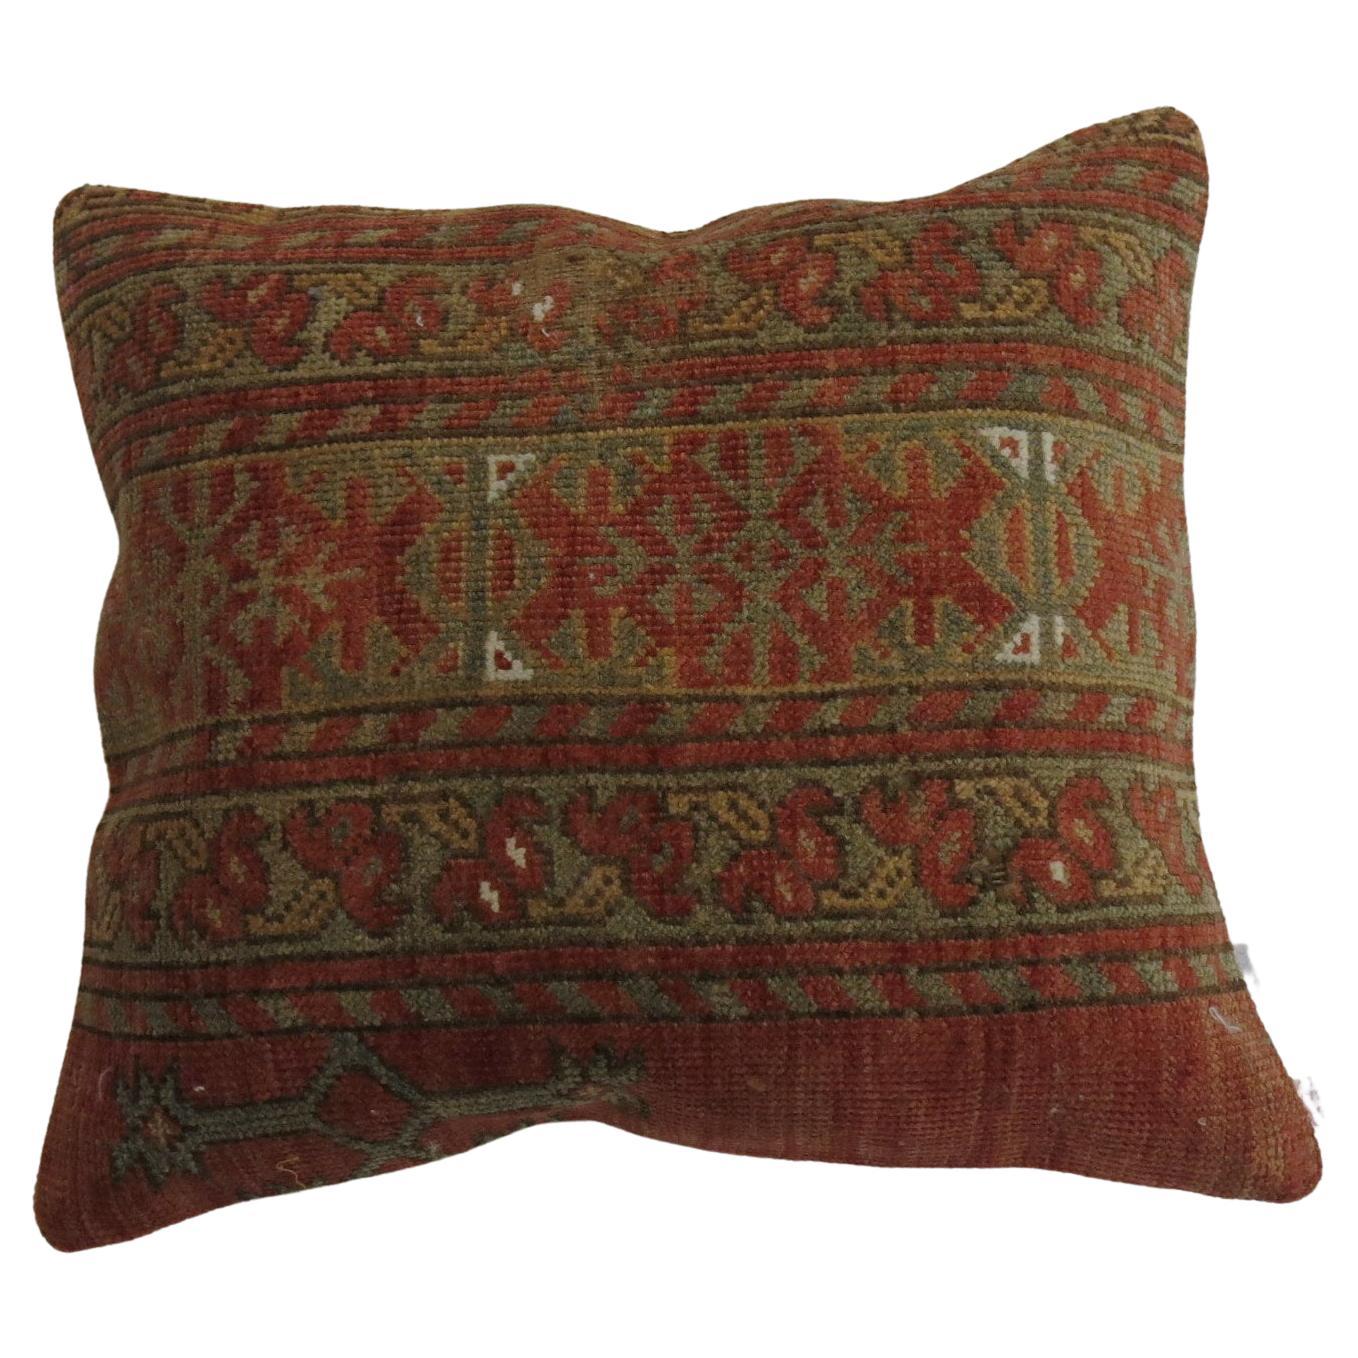 Kissen aus einem antiken Ersari-Teppich aus dem 19. Jahrhundert mit Baumwollrücken und Reißverschluss.

Maße: 14'' x 16''.